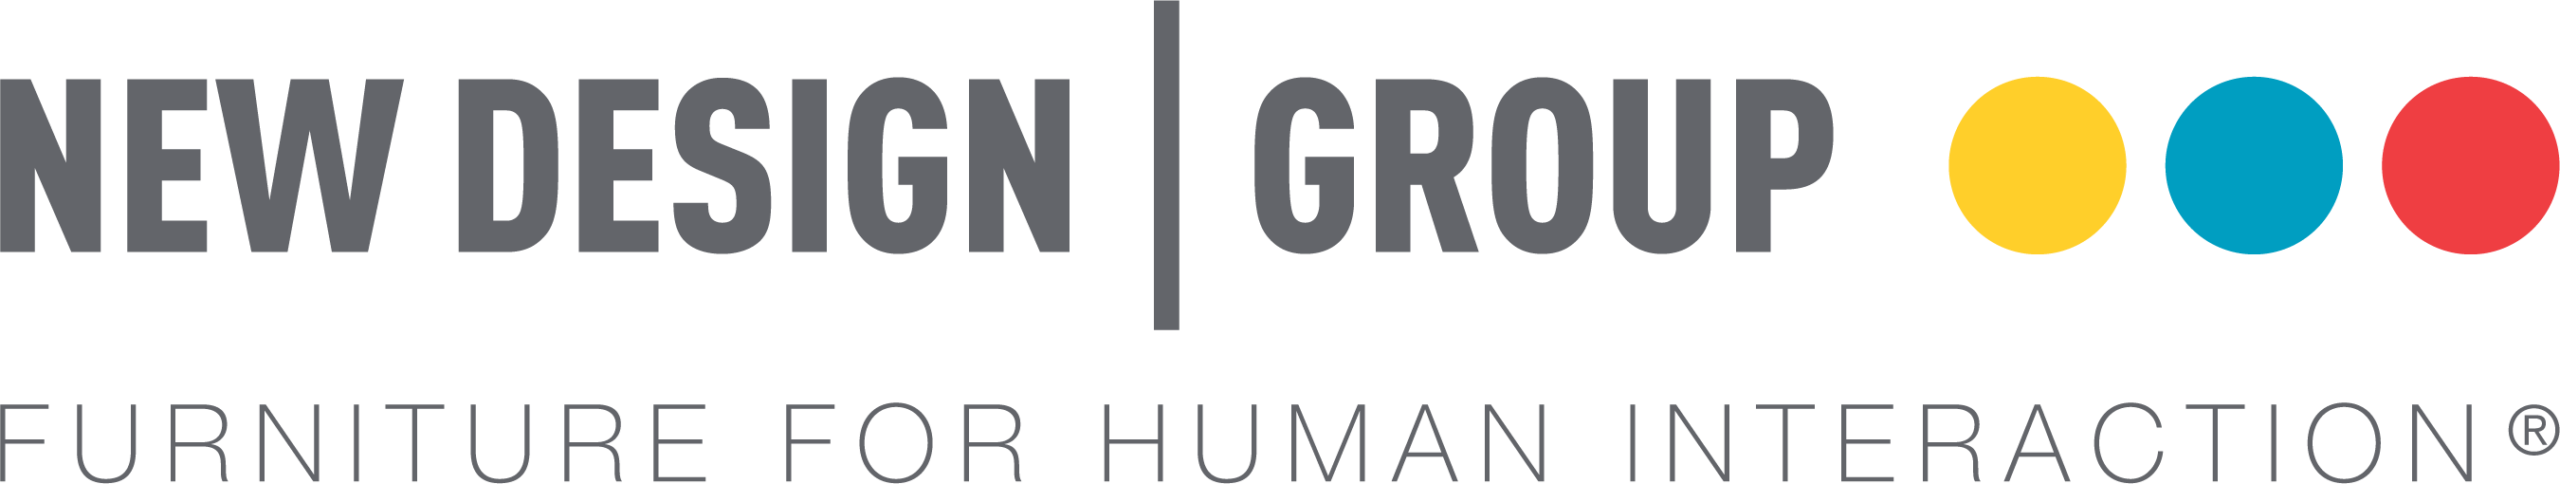 New Design Group Logo